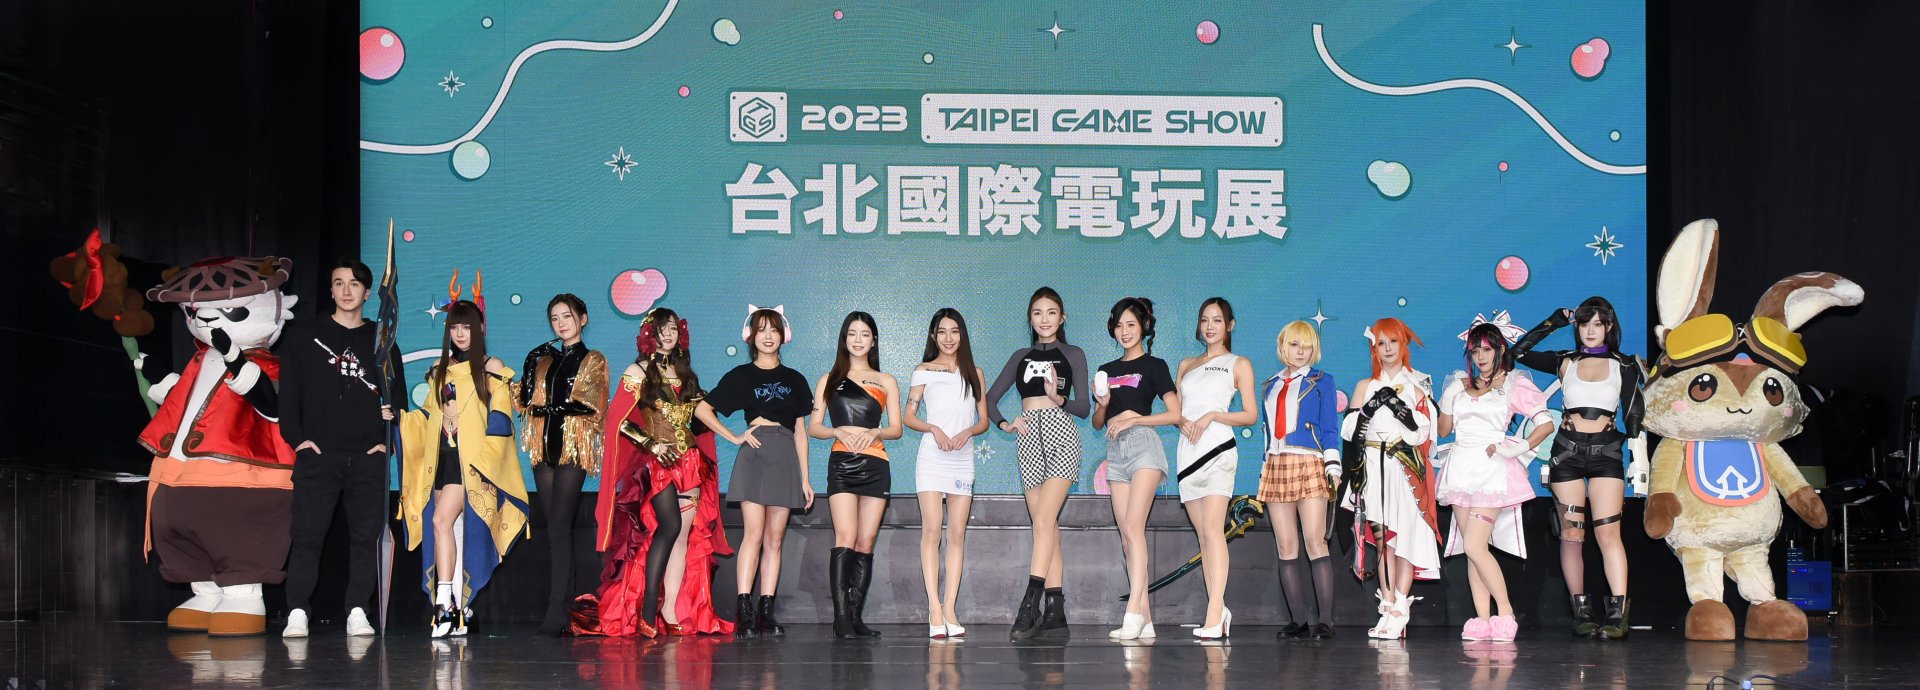 Taipei Game Show 2023 งานมหกรรมเกมสุดยิ่งใหญ่ในทวีปเอเชีย 2-5 กุมภาพันธ์ นี้